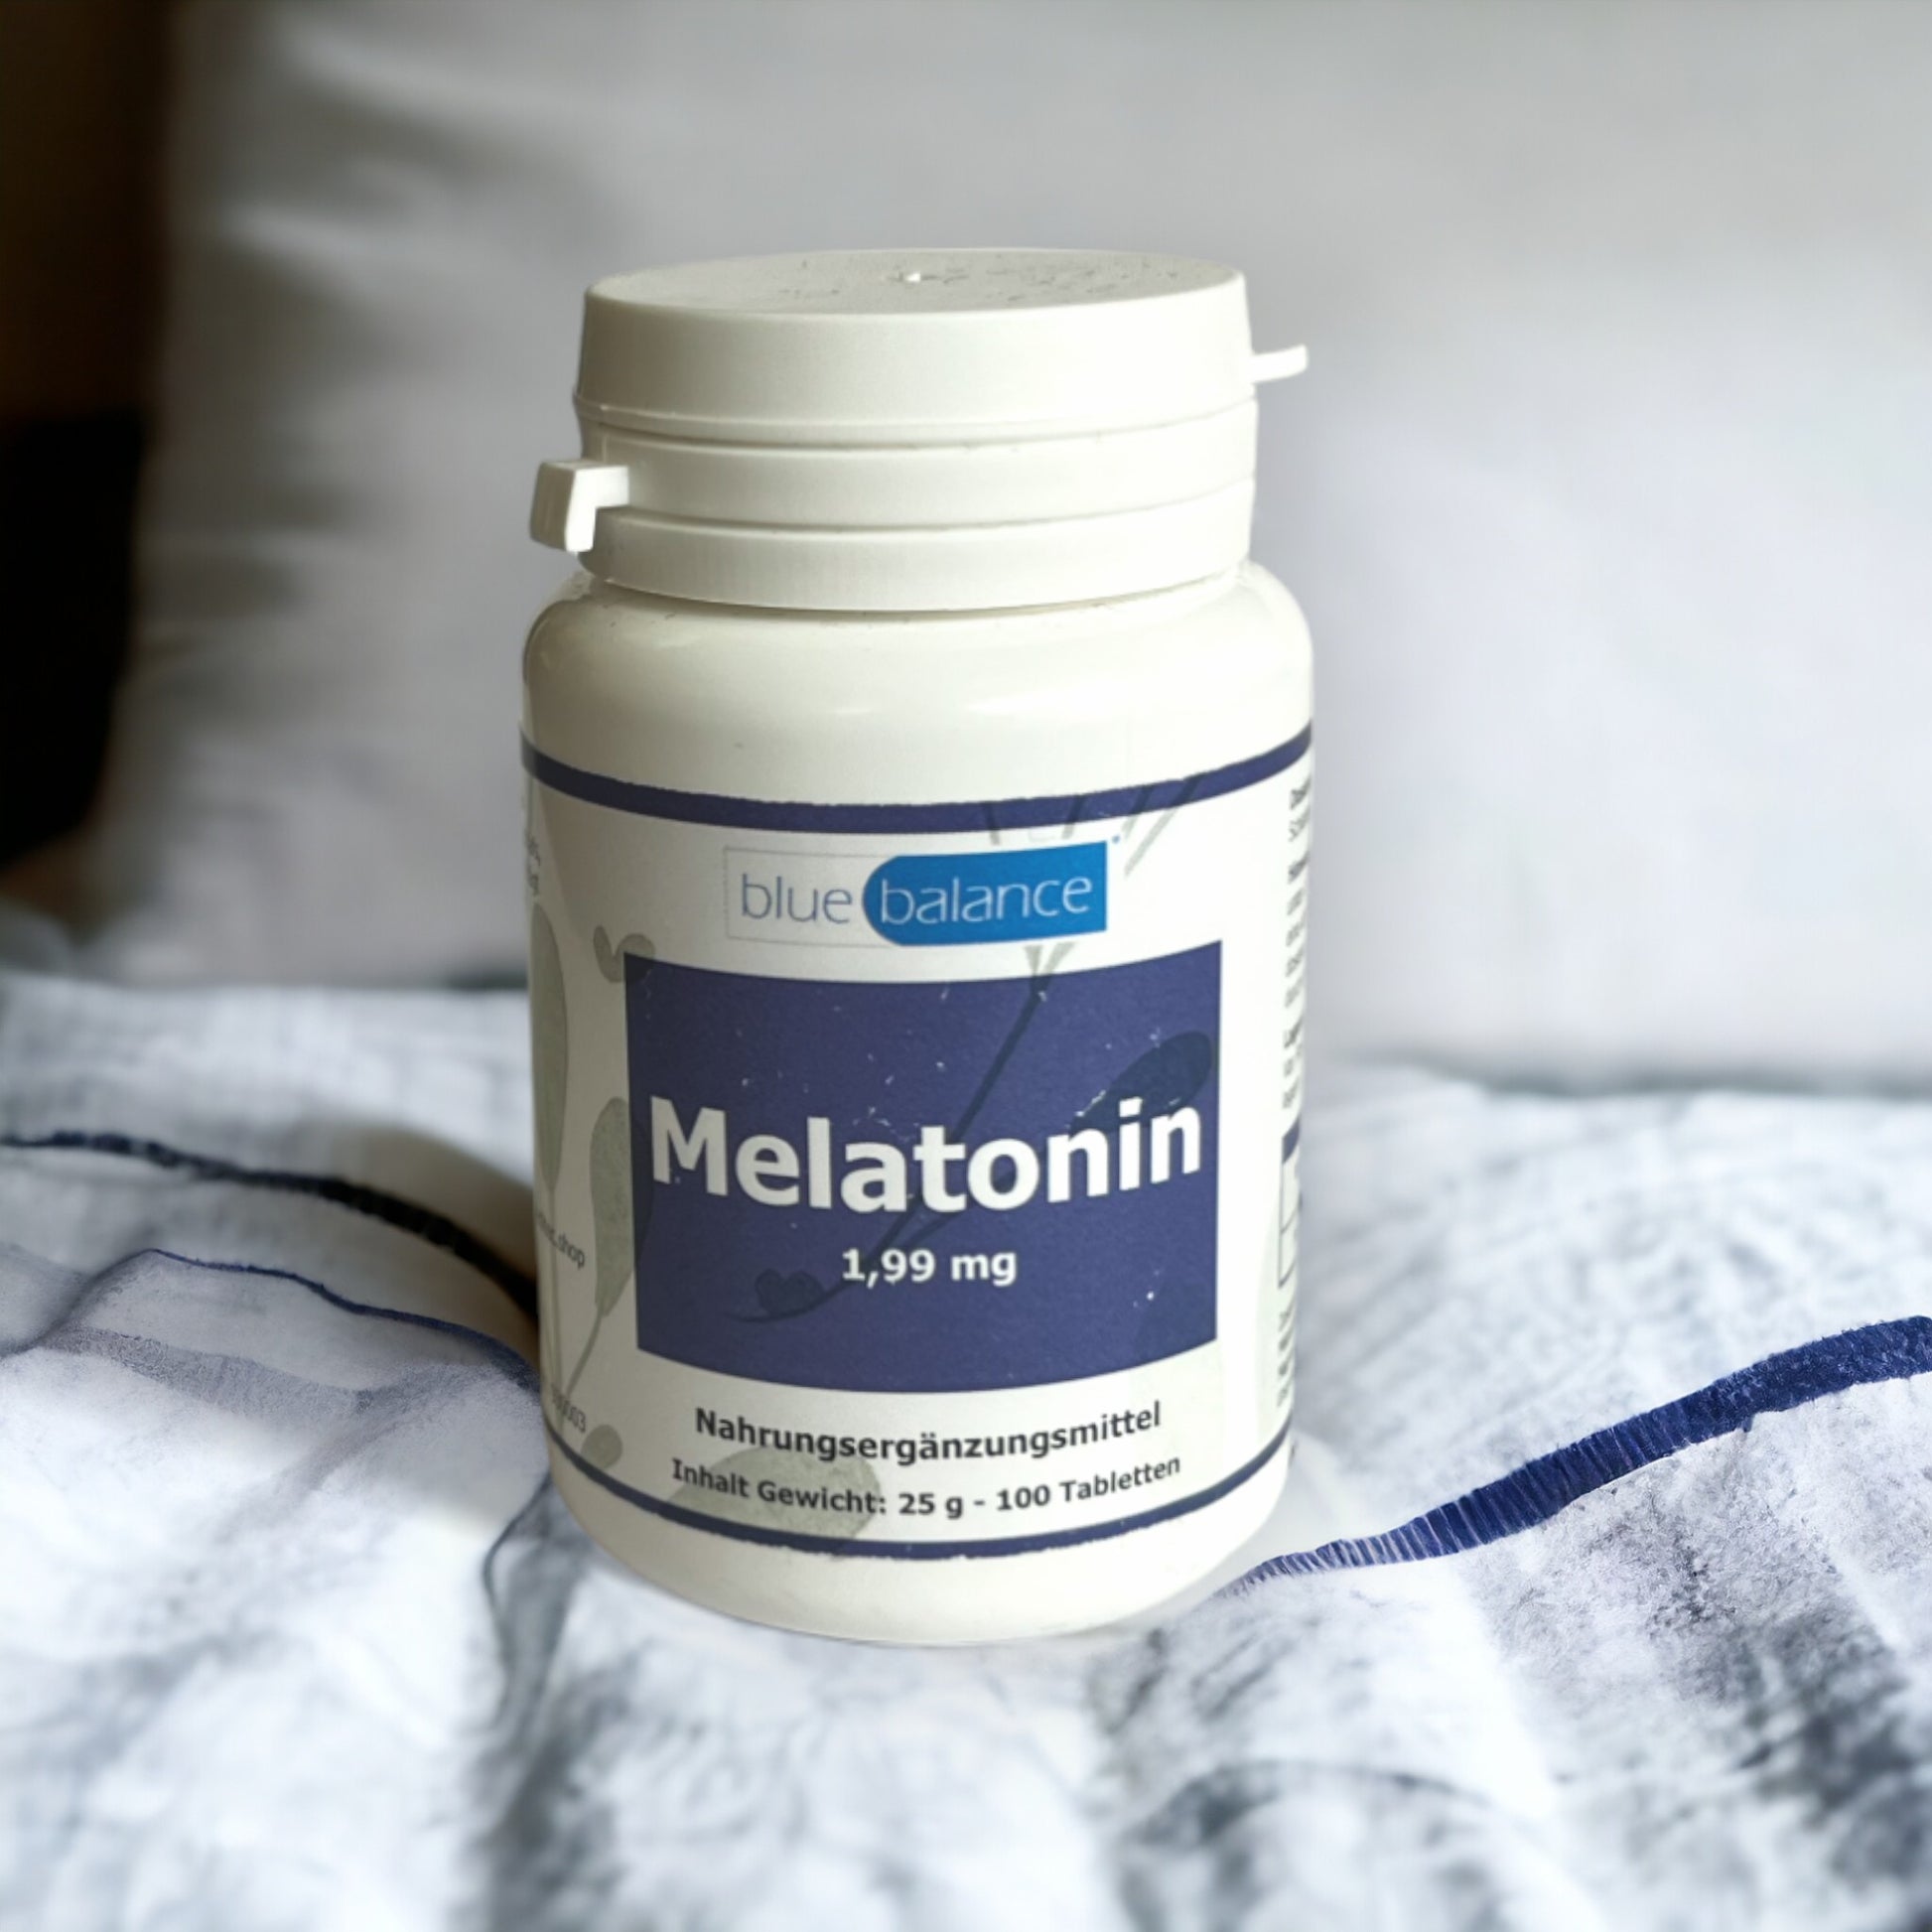 Melatonin-Tablettendose von Blue Balance ETH Meditec vor einem tiefblauen Hintergrund, symbolisierend Ruhe und Entspannung.